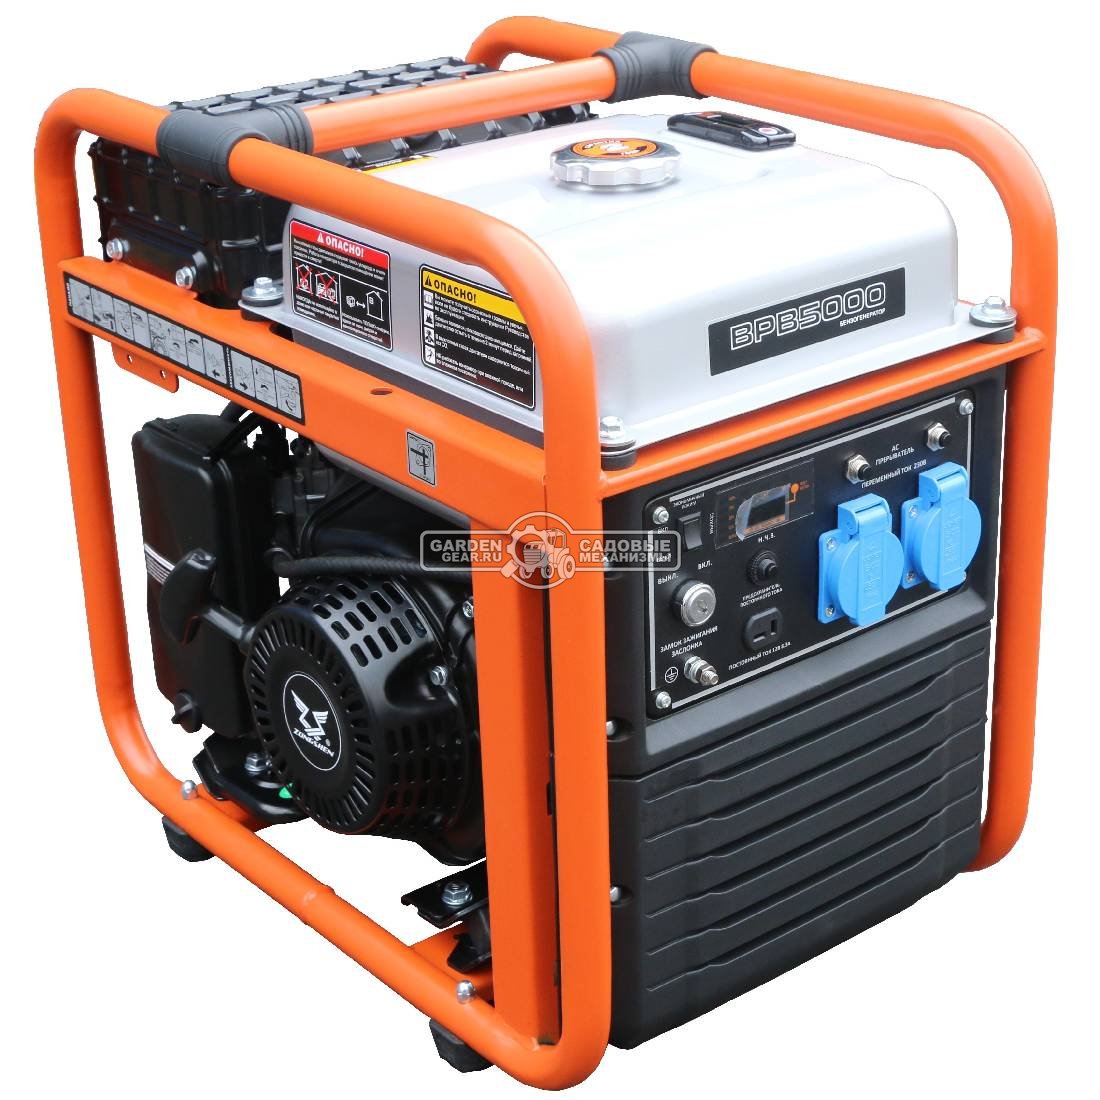 Бензиновый генератор инверторный Zongshen BPB 4500 (PRC, 272 см3, 4.6/4.2 кВт, 11 л, 38 кг)